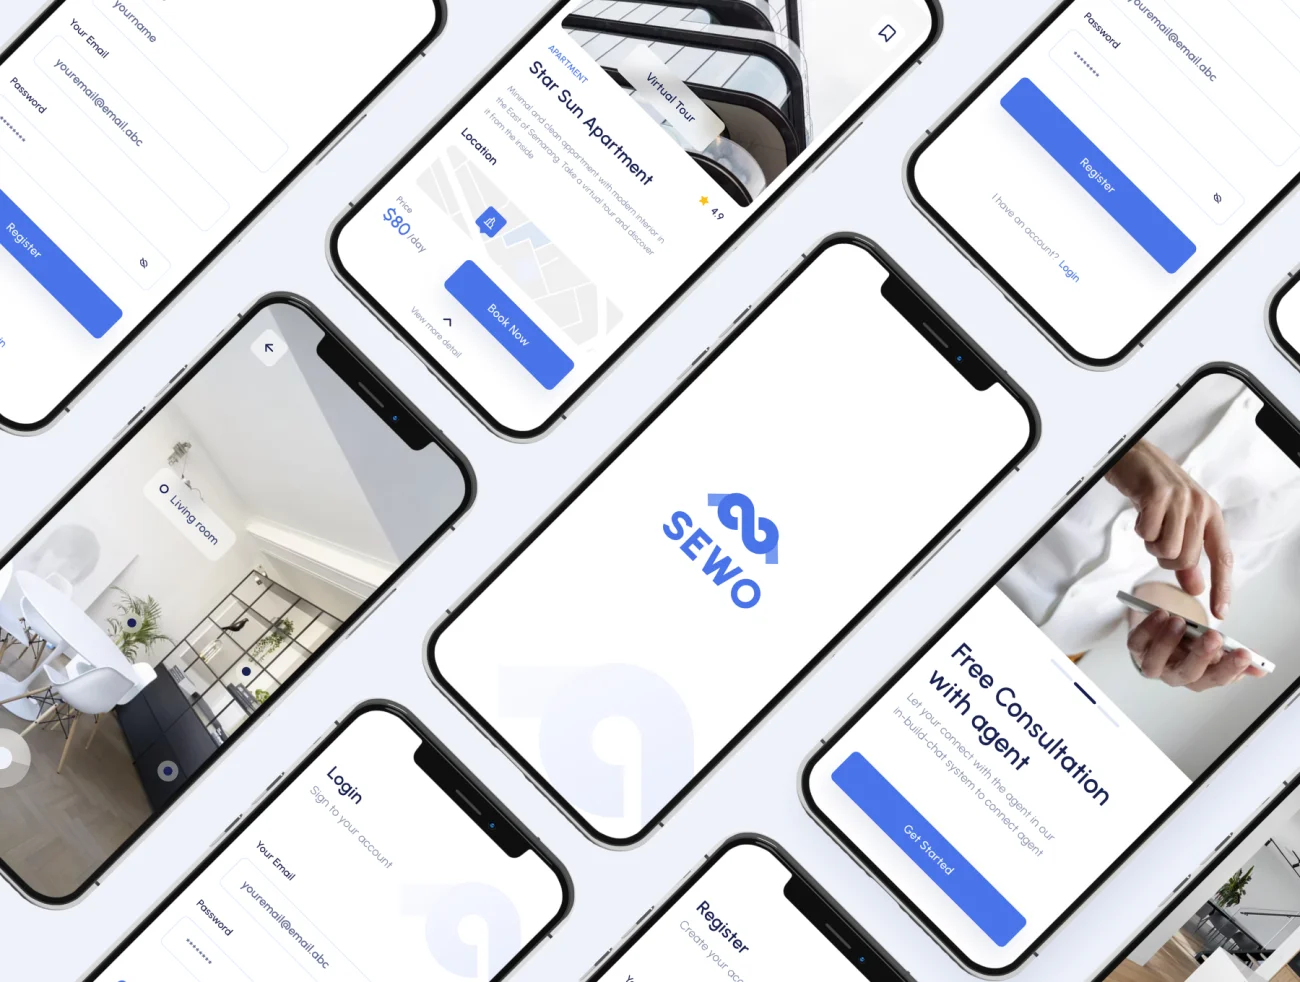 30屏蓝色现代简约地产租房售房手机应用UI设计素材 Sewo – Real Estate Mobile App UI Kit .figma插图9